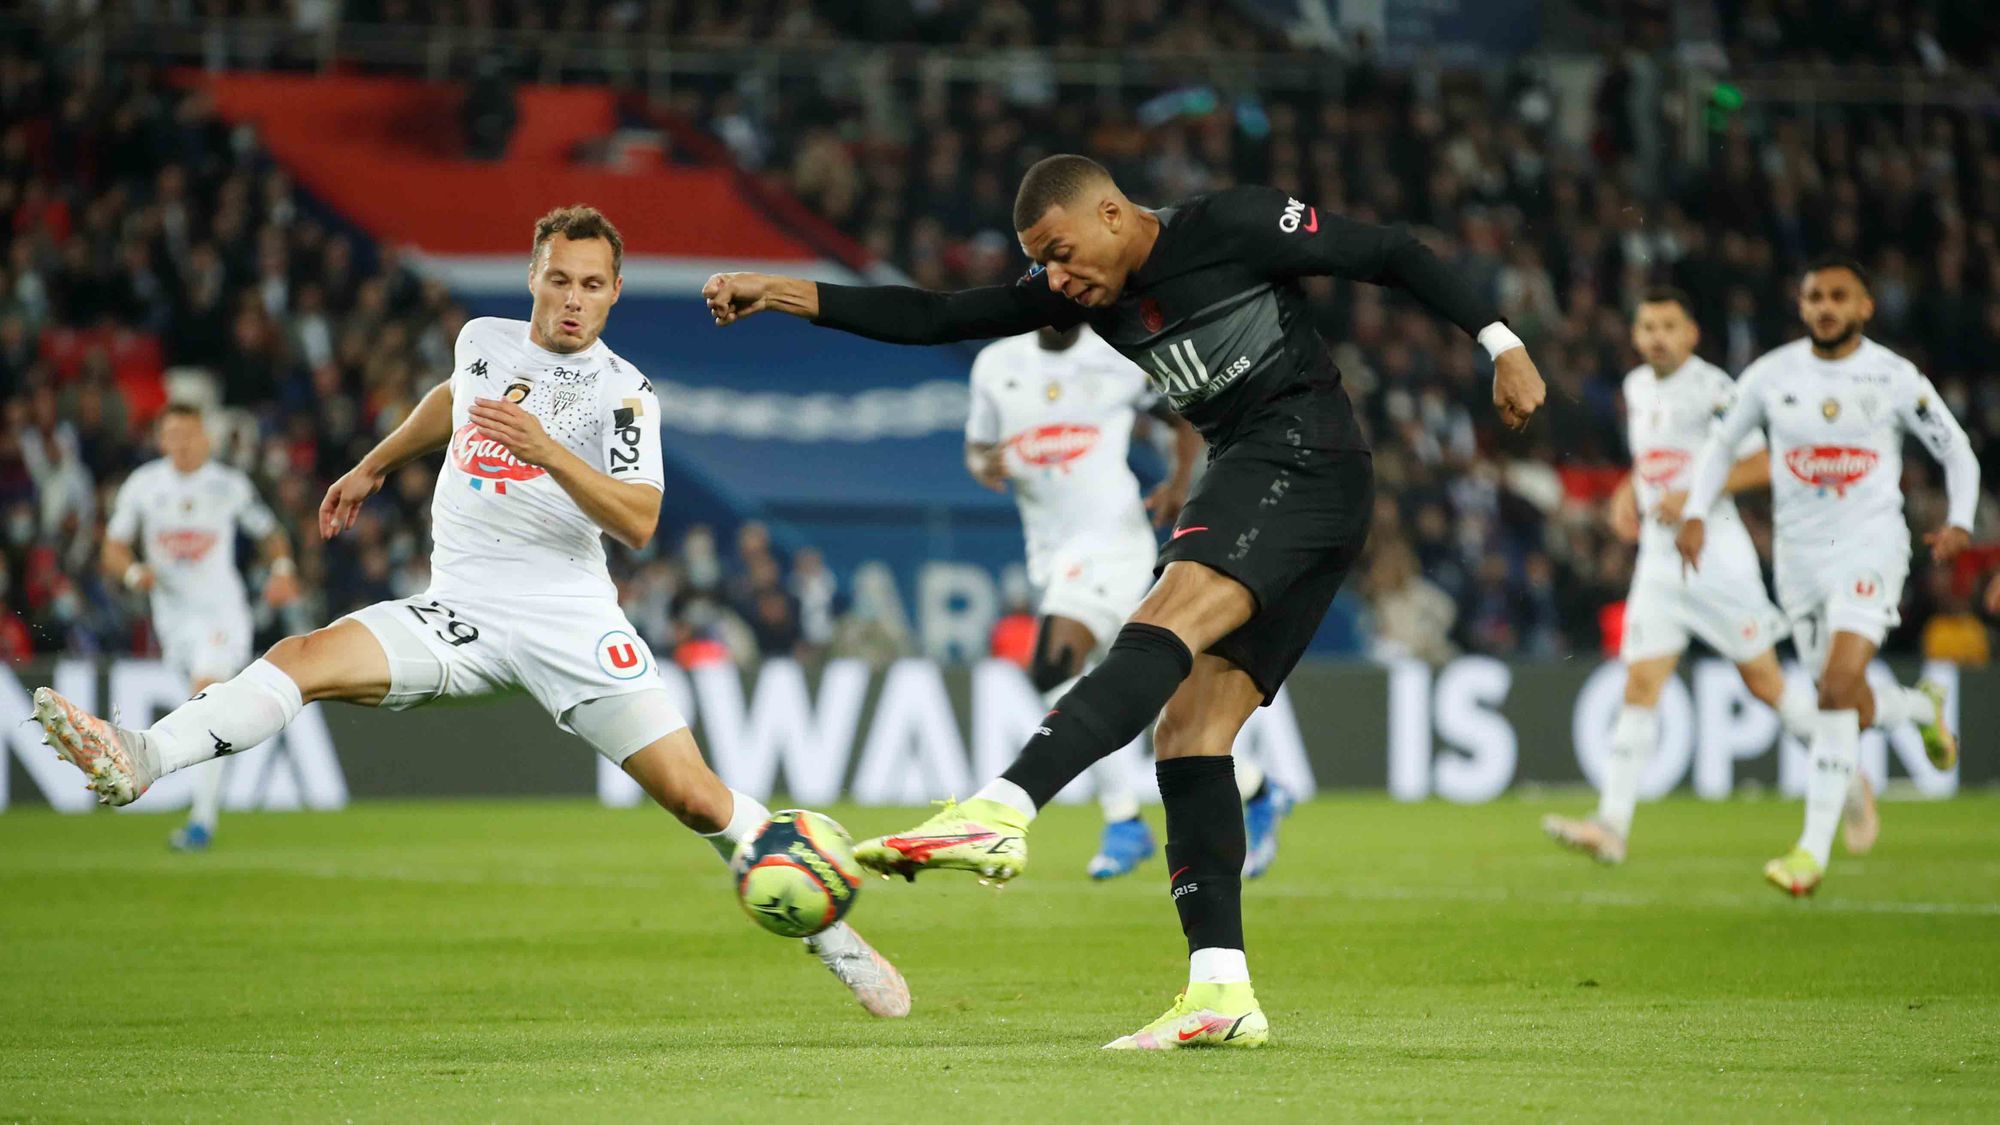 PSG vs Angers, 15 de octubre, Jornada 10 de la Ligue 1: Kylian Mbappé anota el 2-1 al minuto 87.